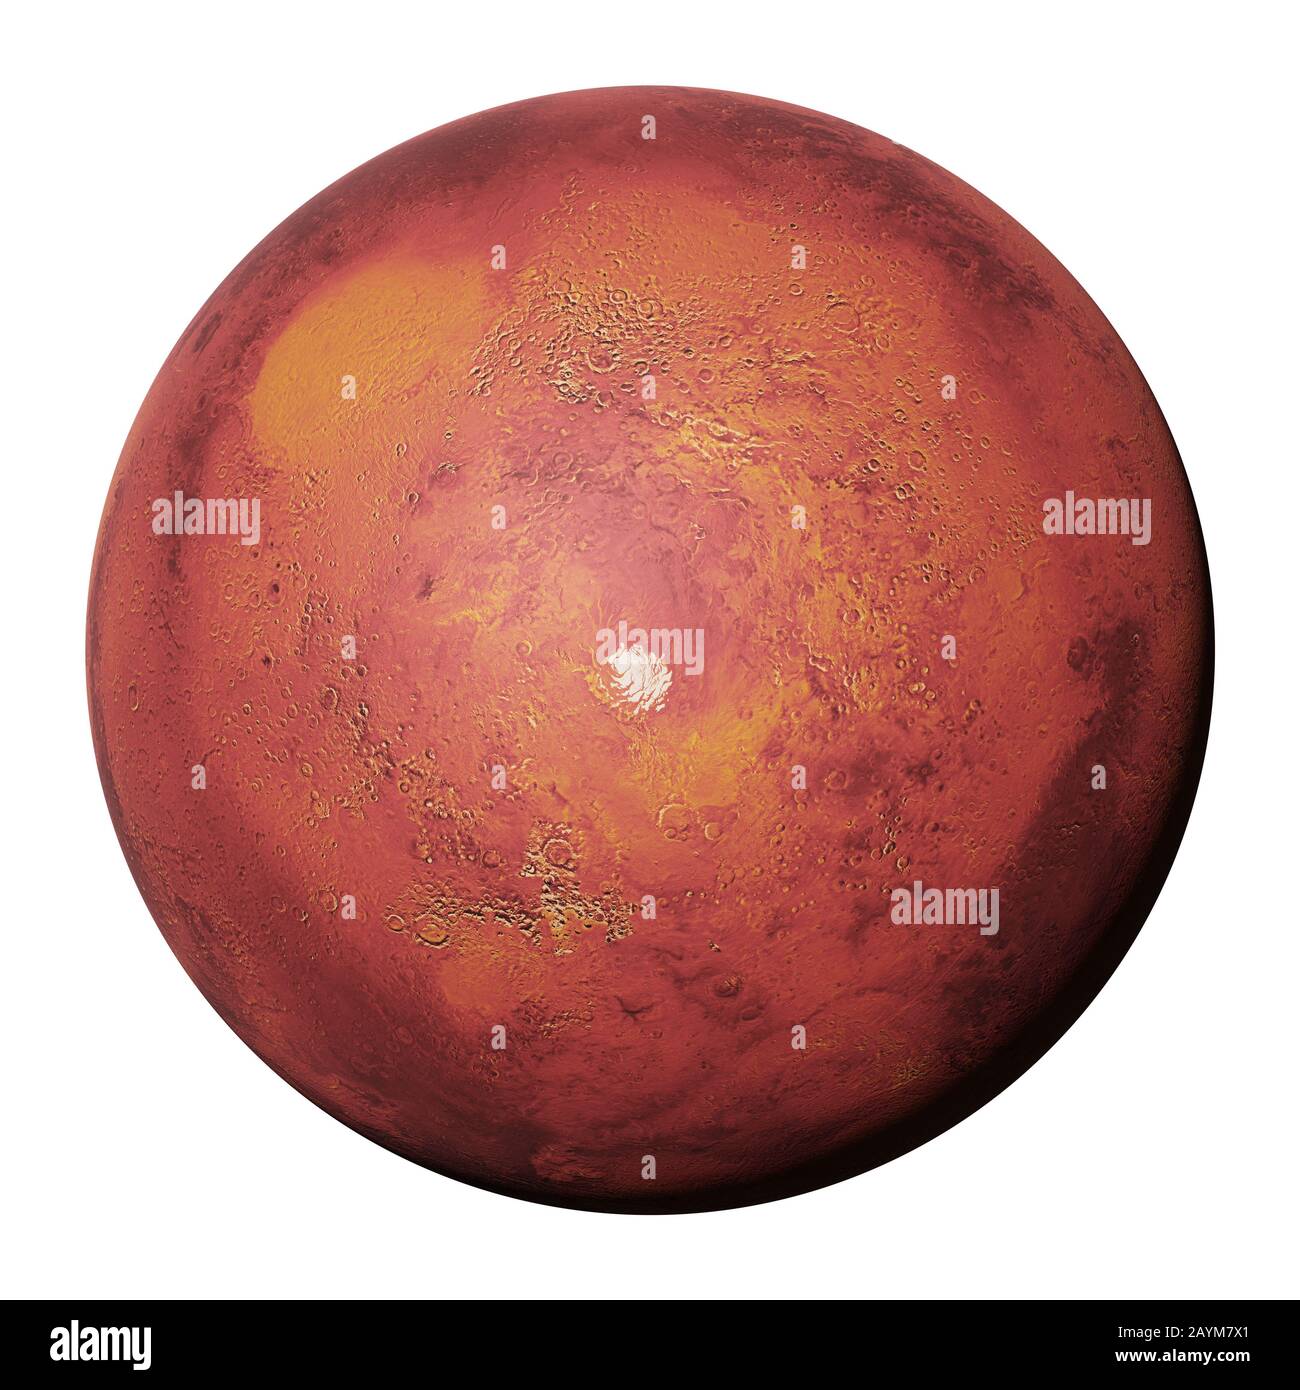 Planète Mars, planète rouge avec calotte glaciaire polaire sud isolée sur fond blanc Banque D'Images